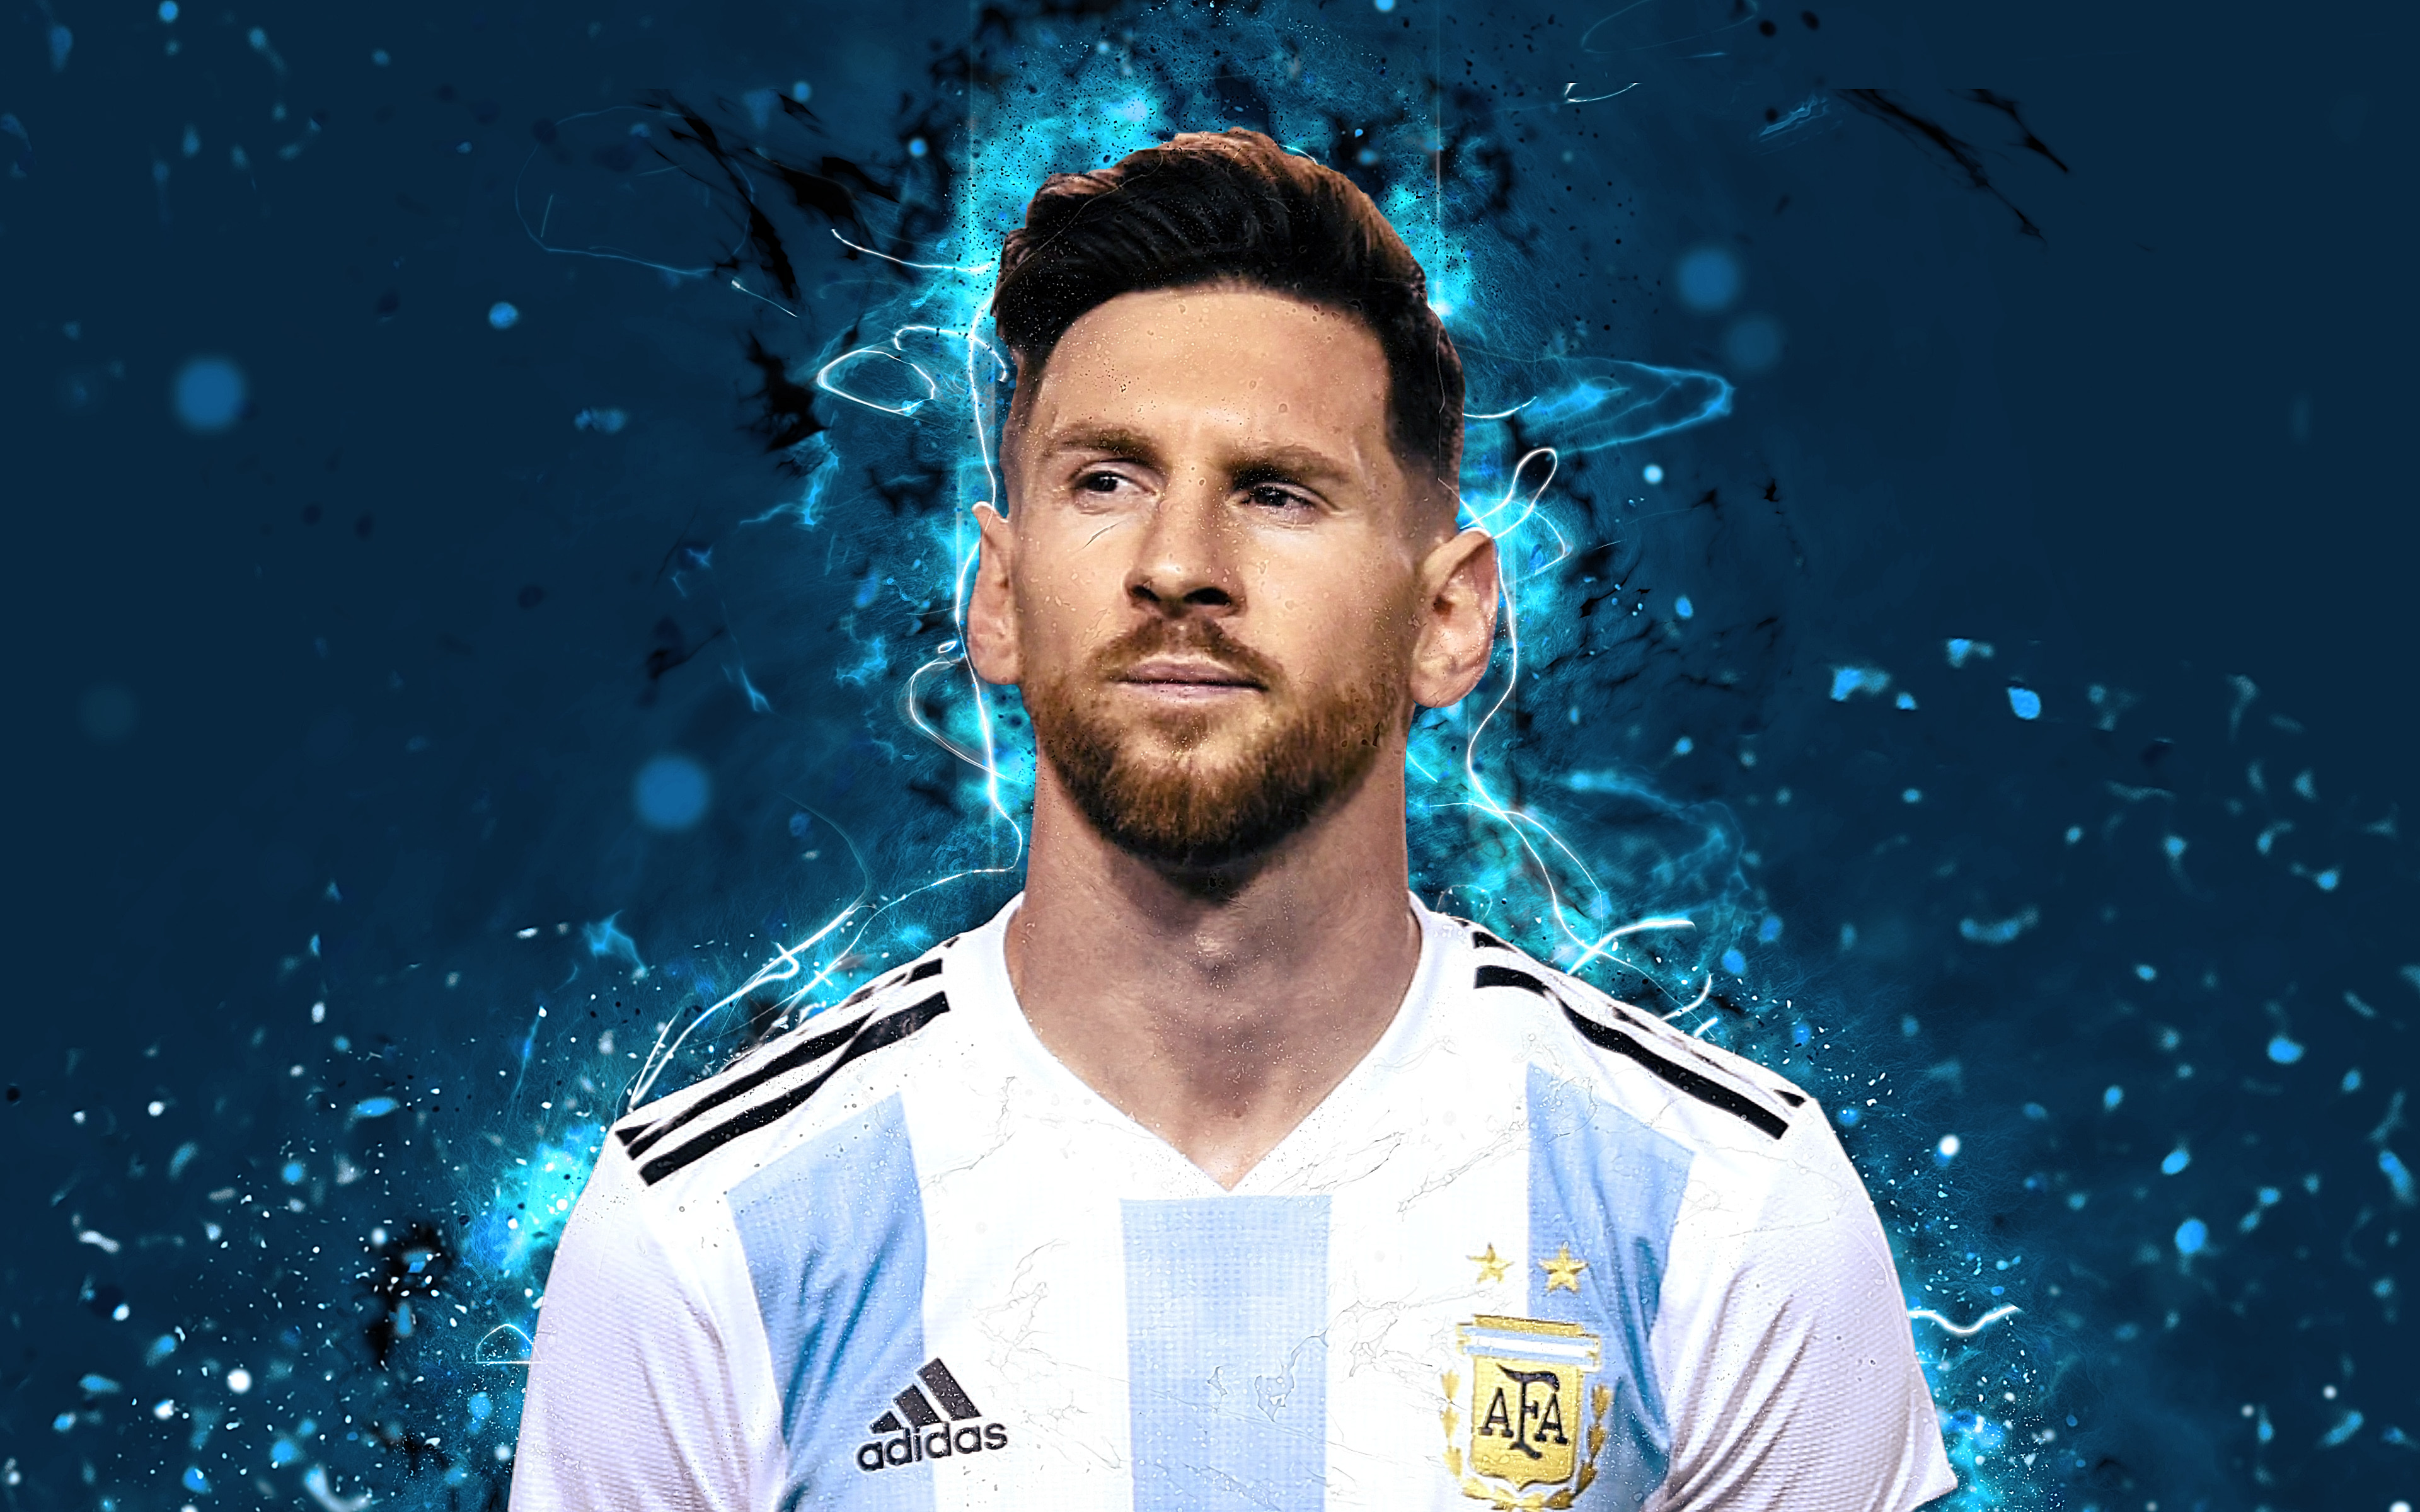 Hình nền Messi: Bạn là một fan cuồng nhiệt của Messi? Hãy xem ngay hình ảnh này để có được một hình nền độc đáo, phong cách và mang đậm dấu ấn của ngôi sao bóng đá này. Đảm bảo sẽ khiến bạn rất thích thú.